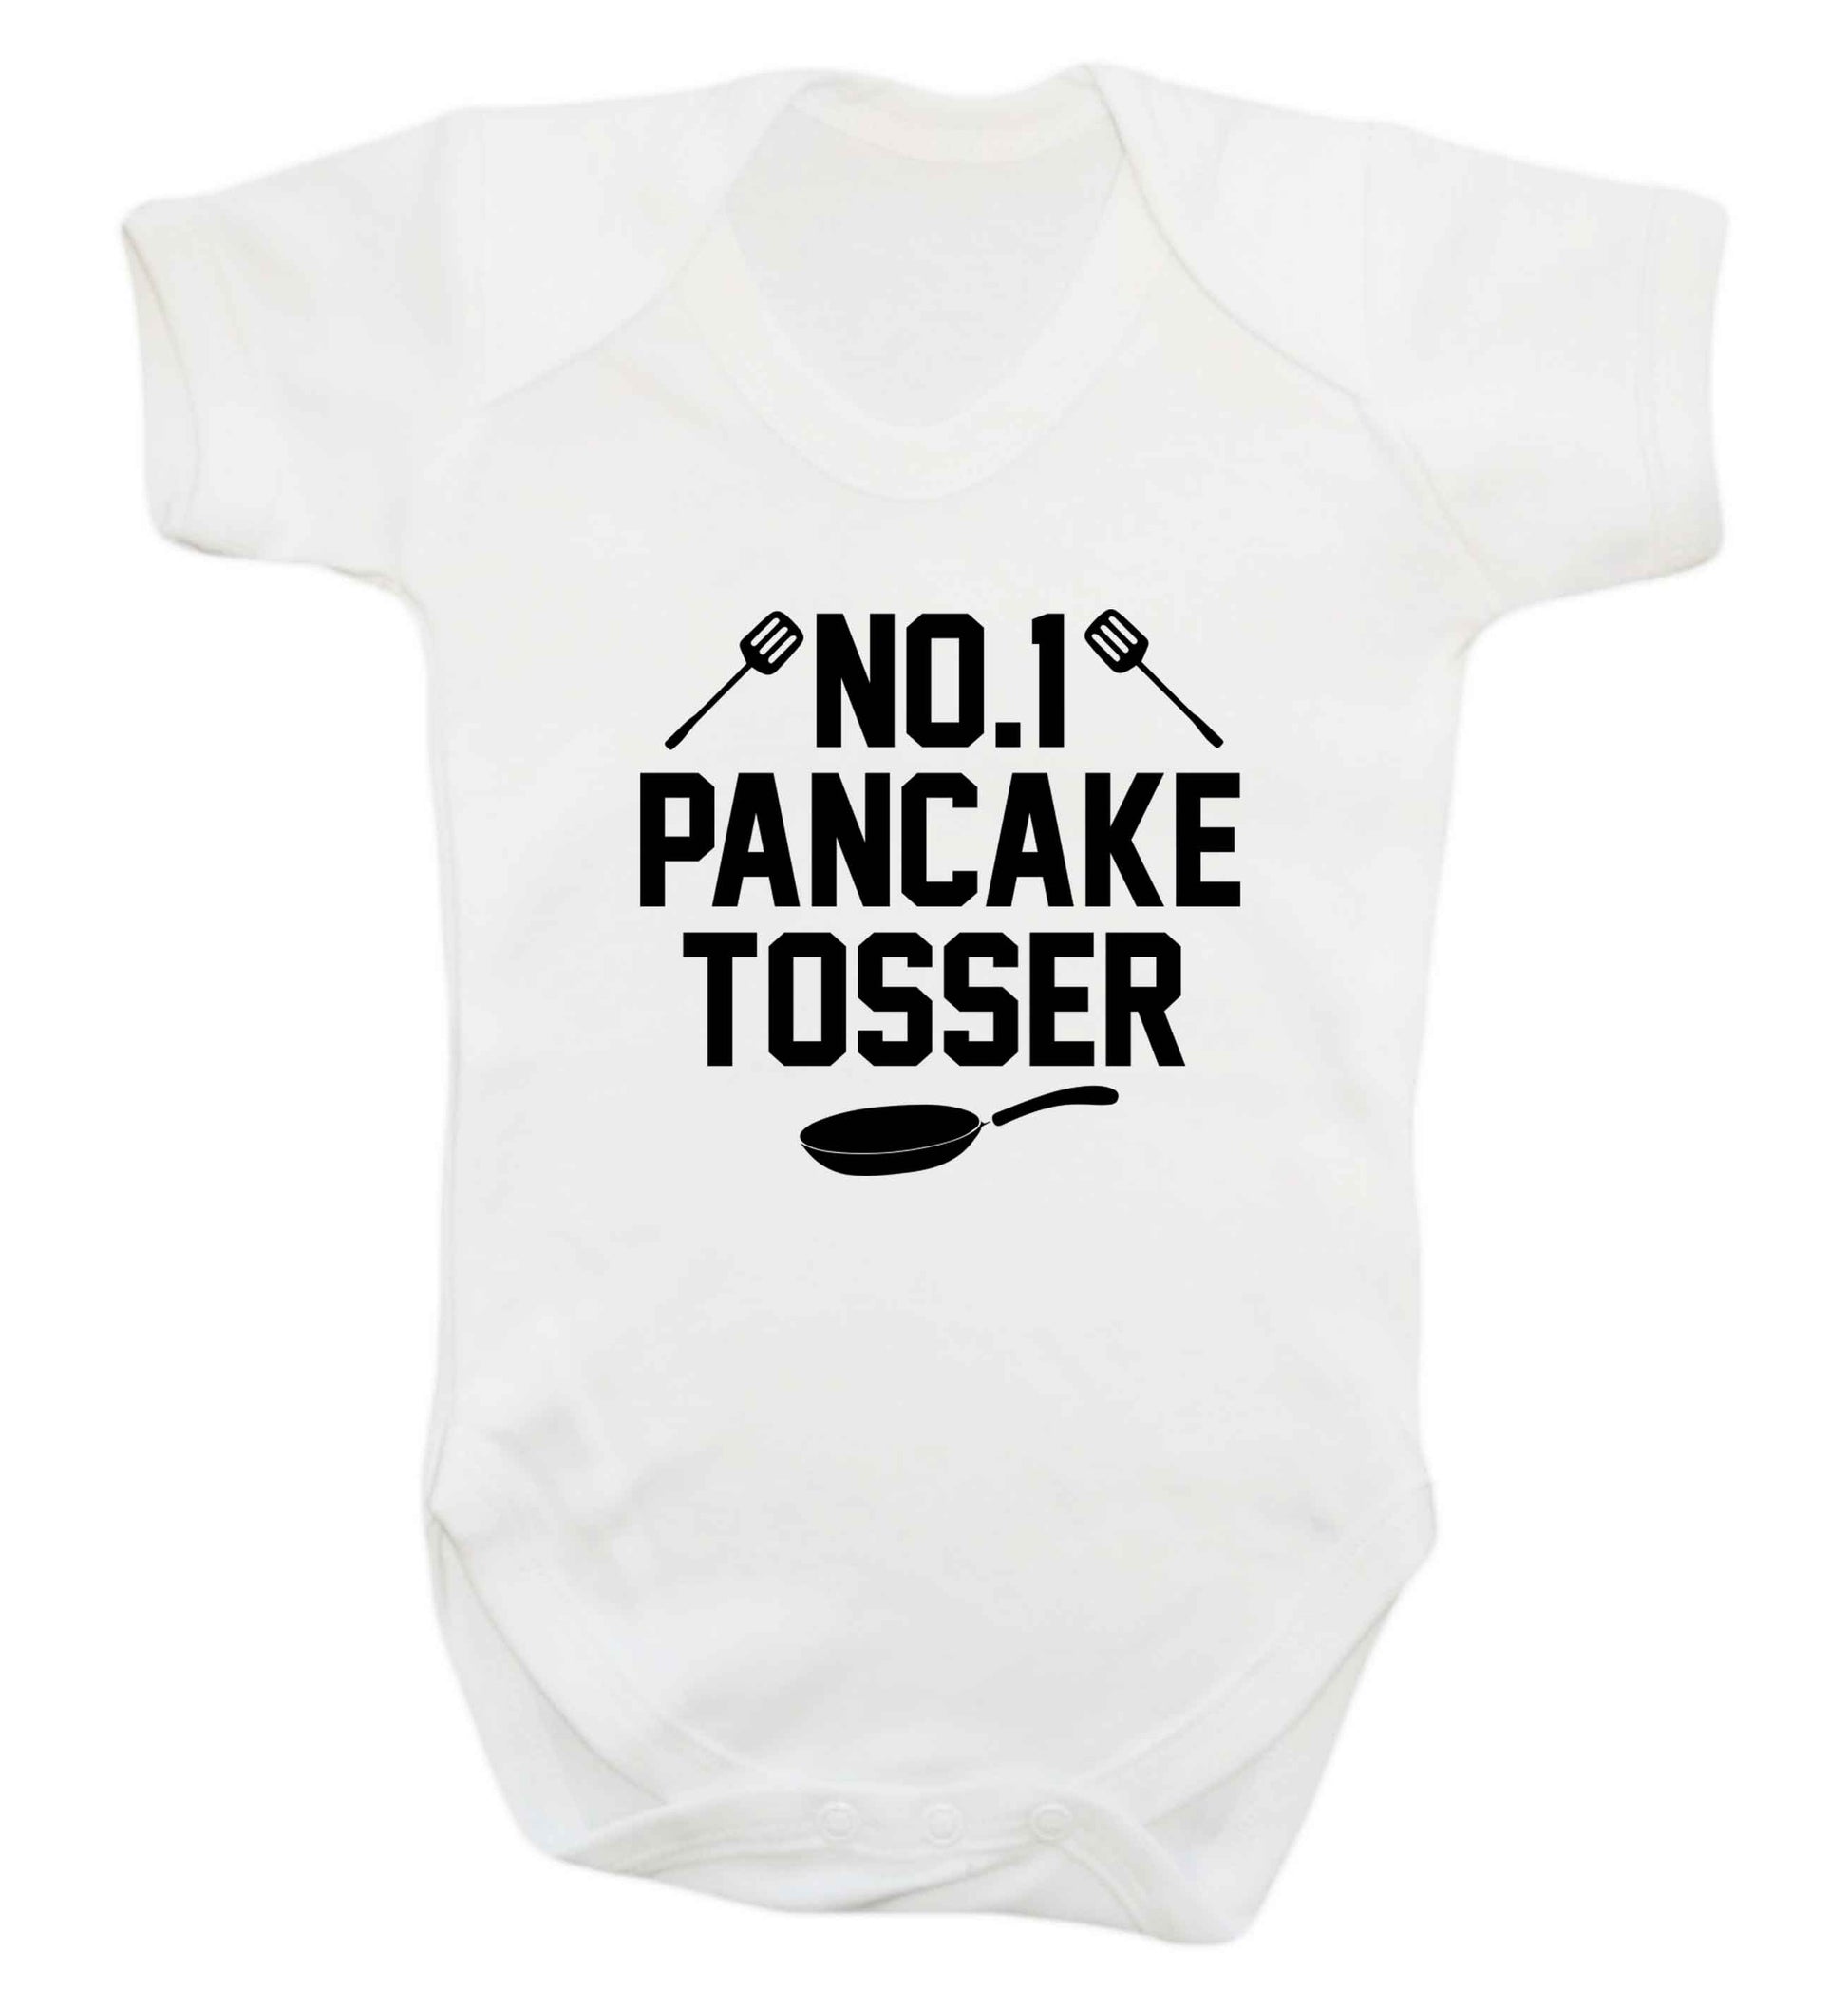 No.1 Pancake tosser baby vest white 18-24 months